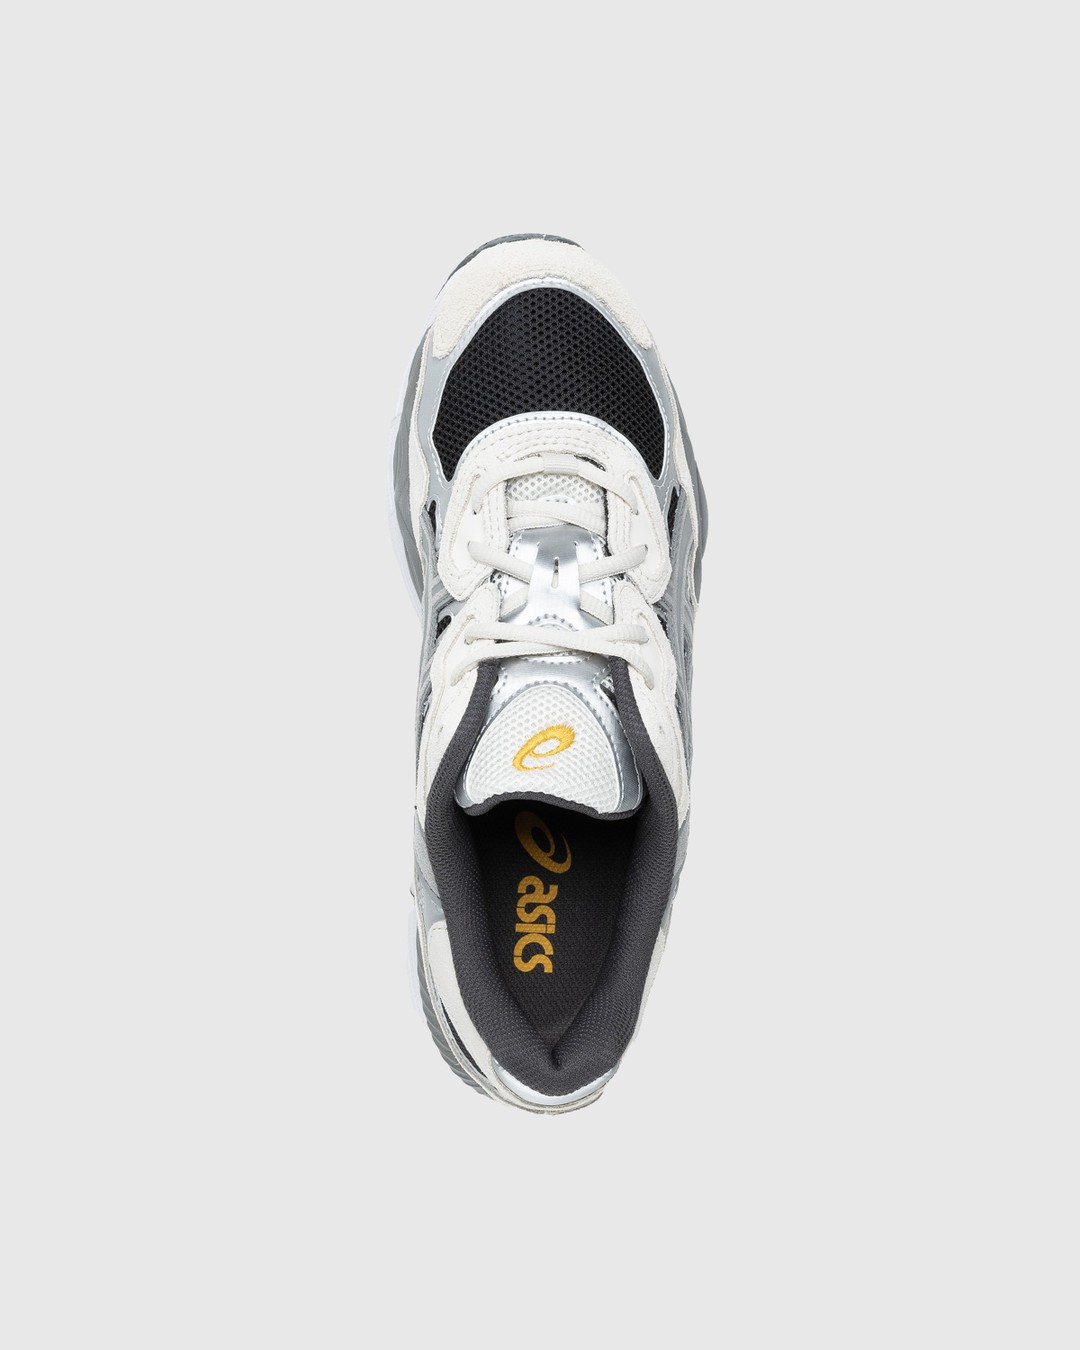 asics – GEL-NYC Black/Clay Grey - Low Top Sneakers - Grey - Image 5